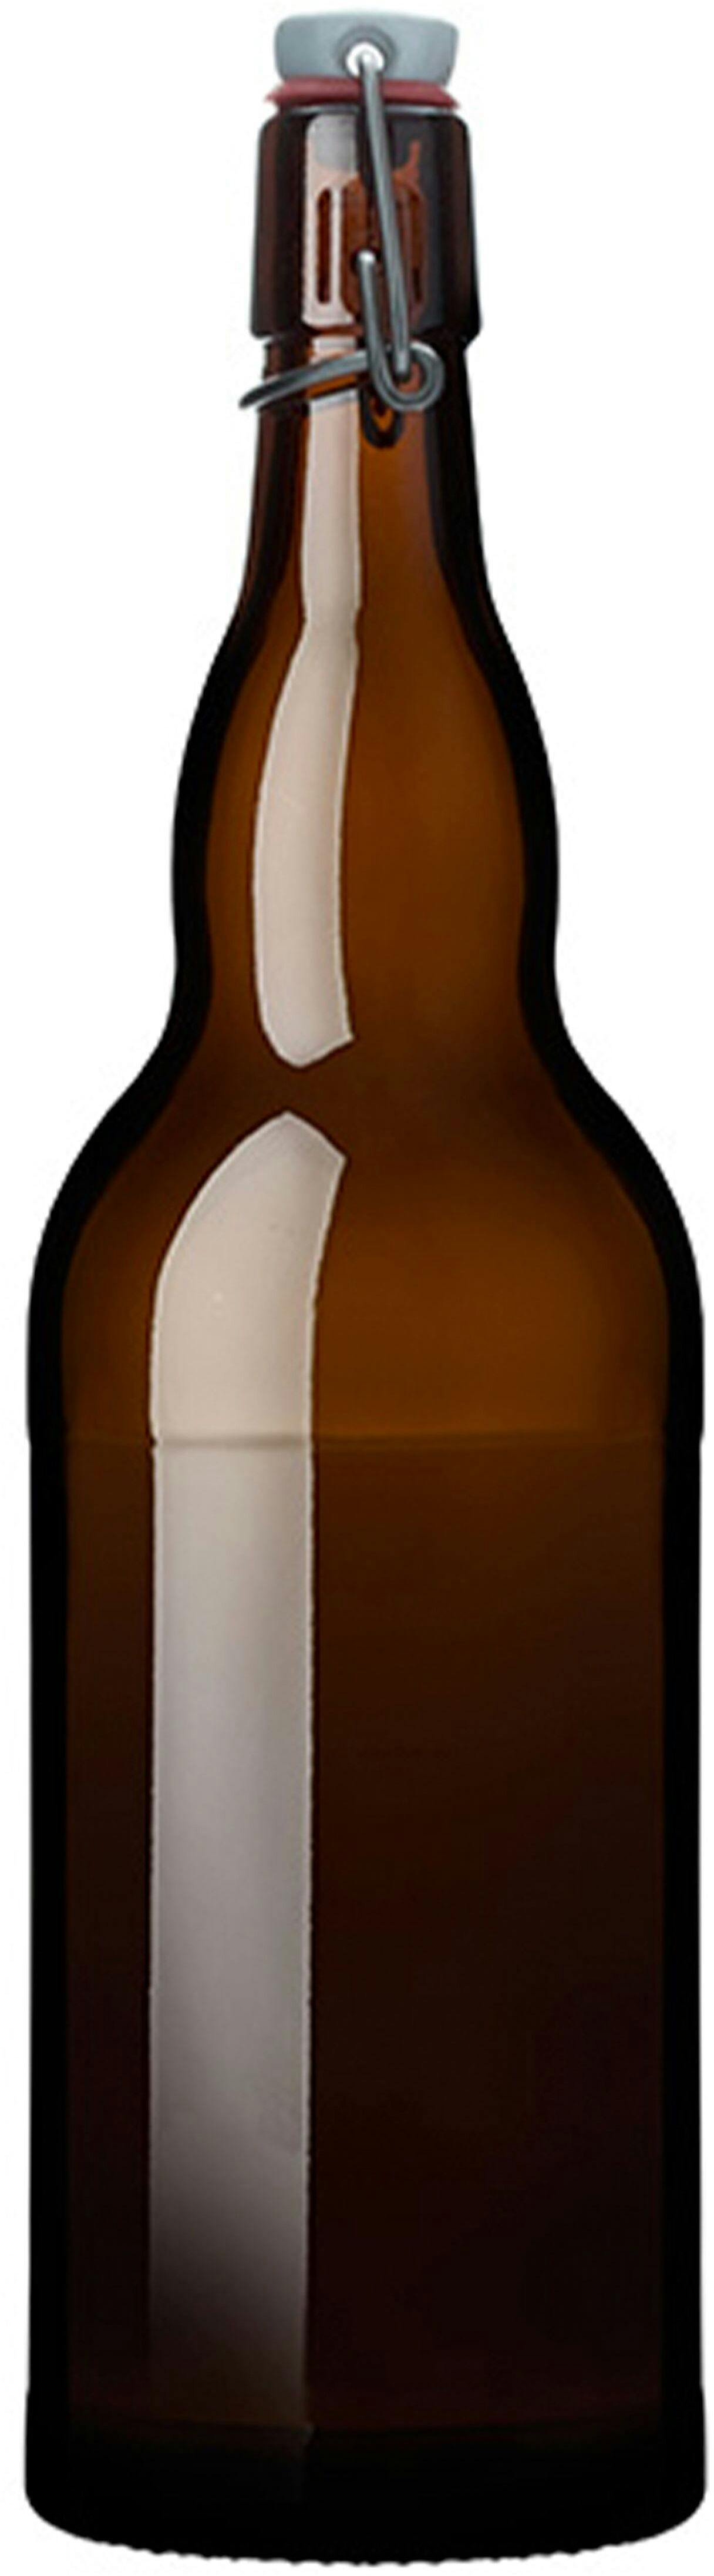 Bottle BIRRA MAURER KF 2000 TM